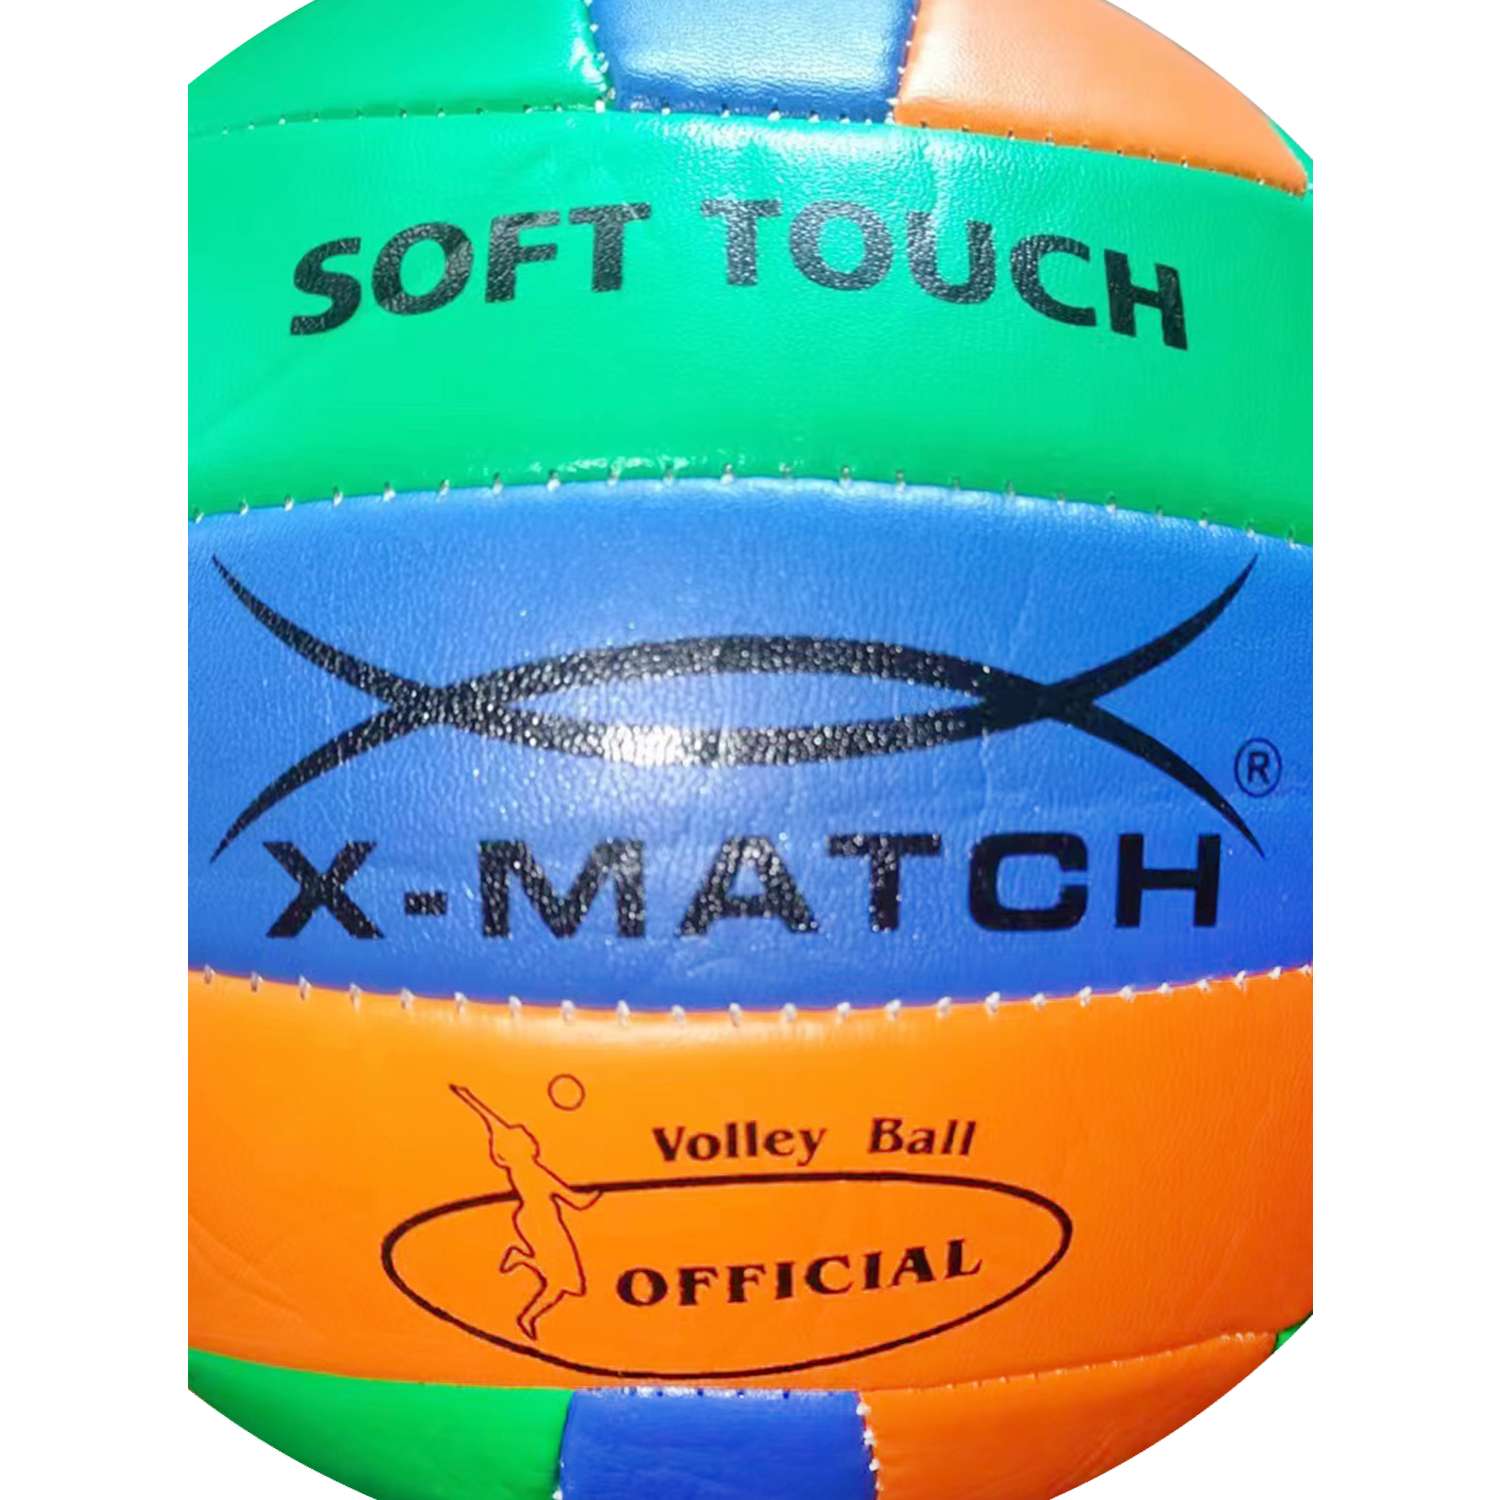 Мяч волейбольный X-Match 260-280 г. 2.0 мм. PVC - фото 3